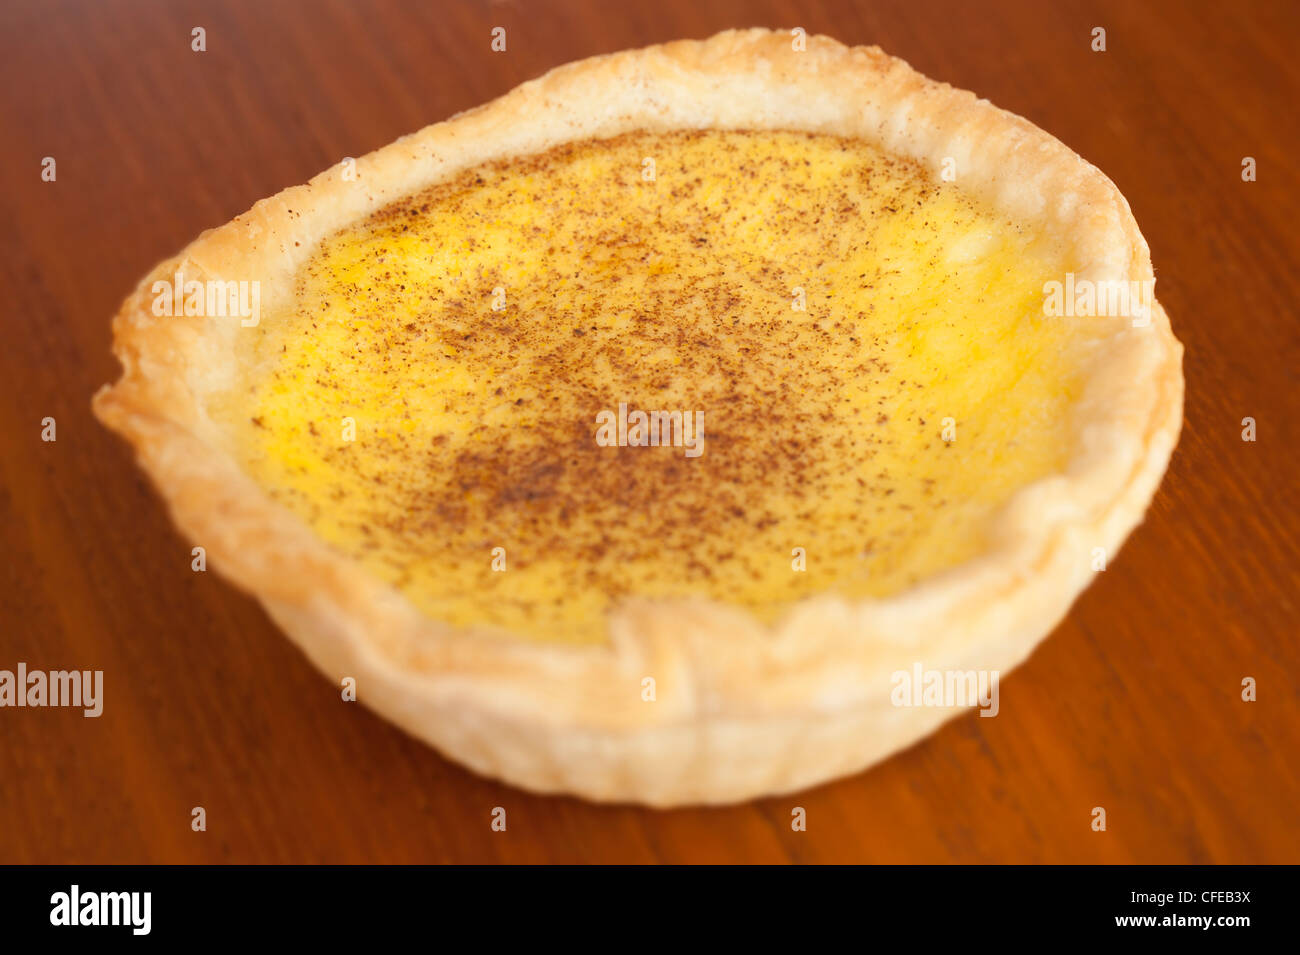 Custard tart on wood table background. Stock Photo